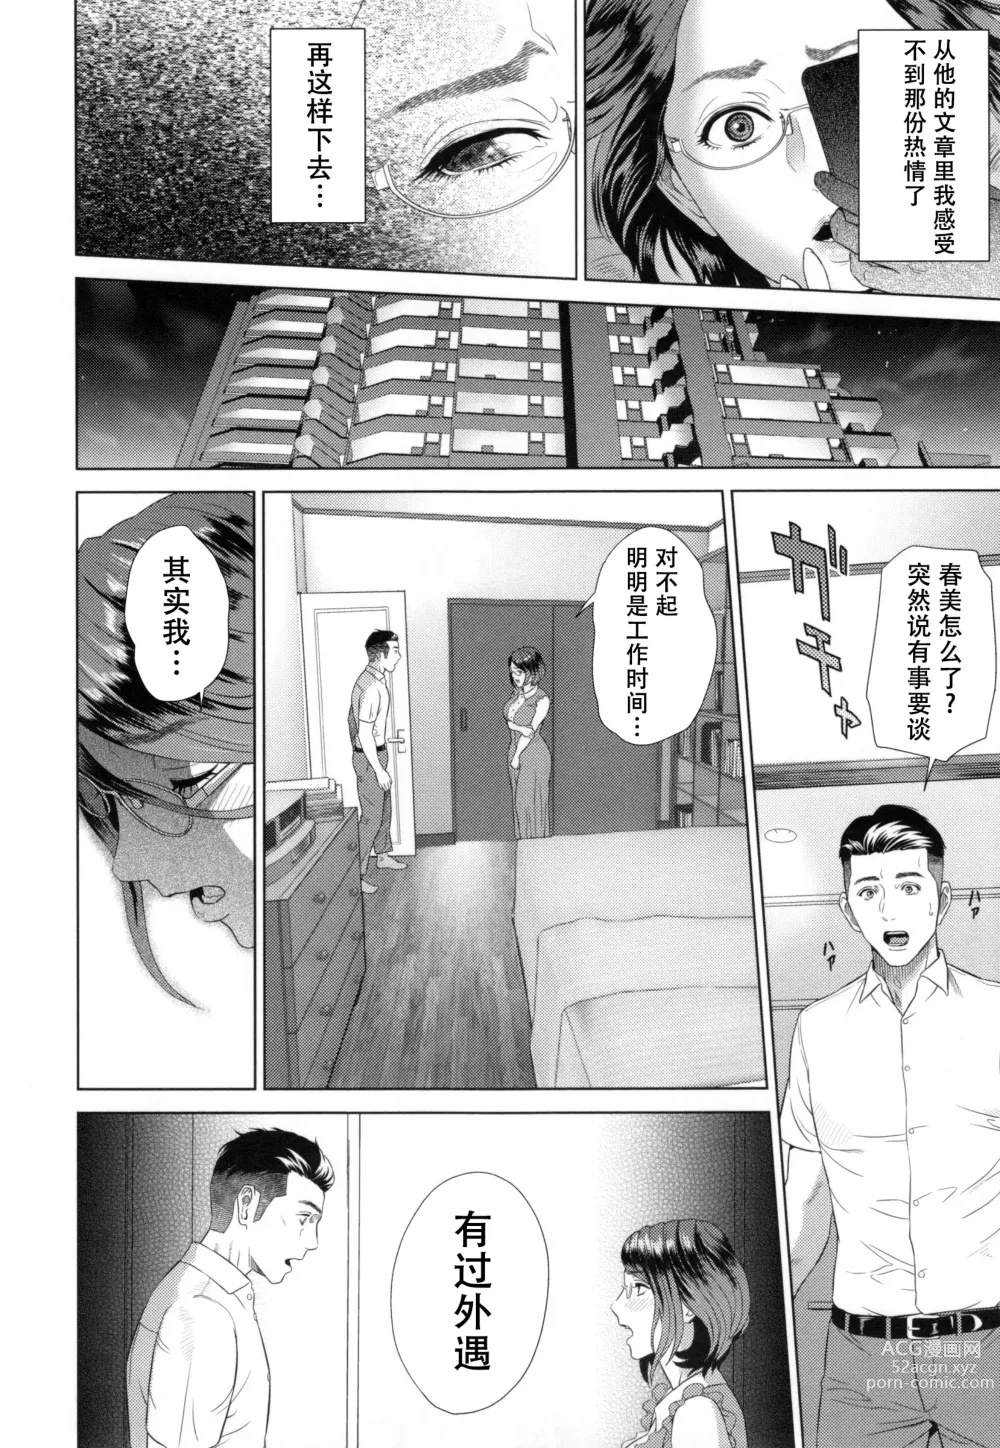 Page 187 of manga Jukuren no Wana